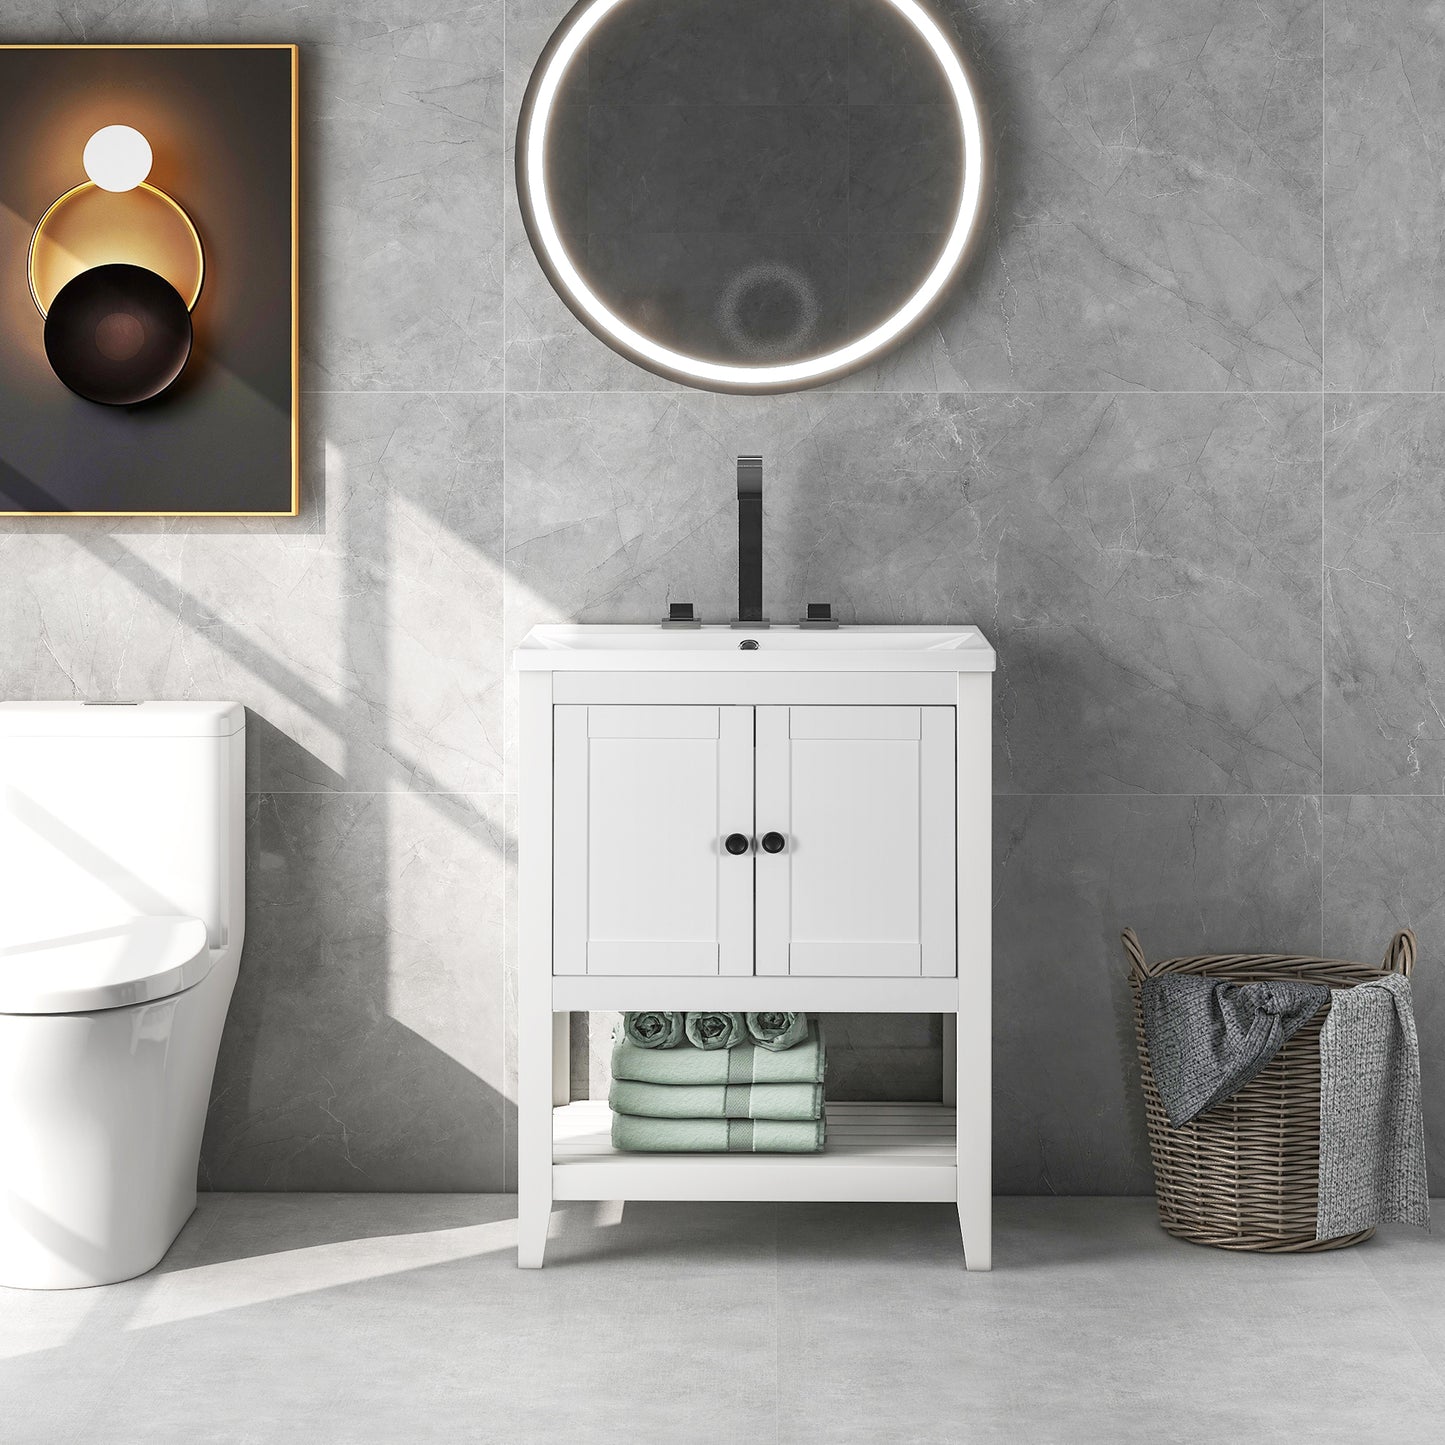 [VIDEO] 24" White Modern Sleek Bathroom Vanity Elegant Ceramic Sink with Solid Wood Frame Open Style Shelf (OLD SKU: JL000001AAK)